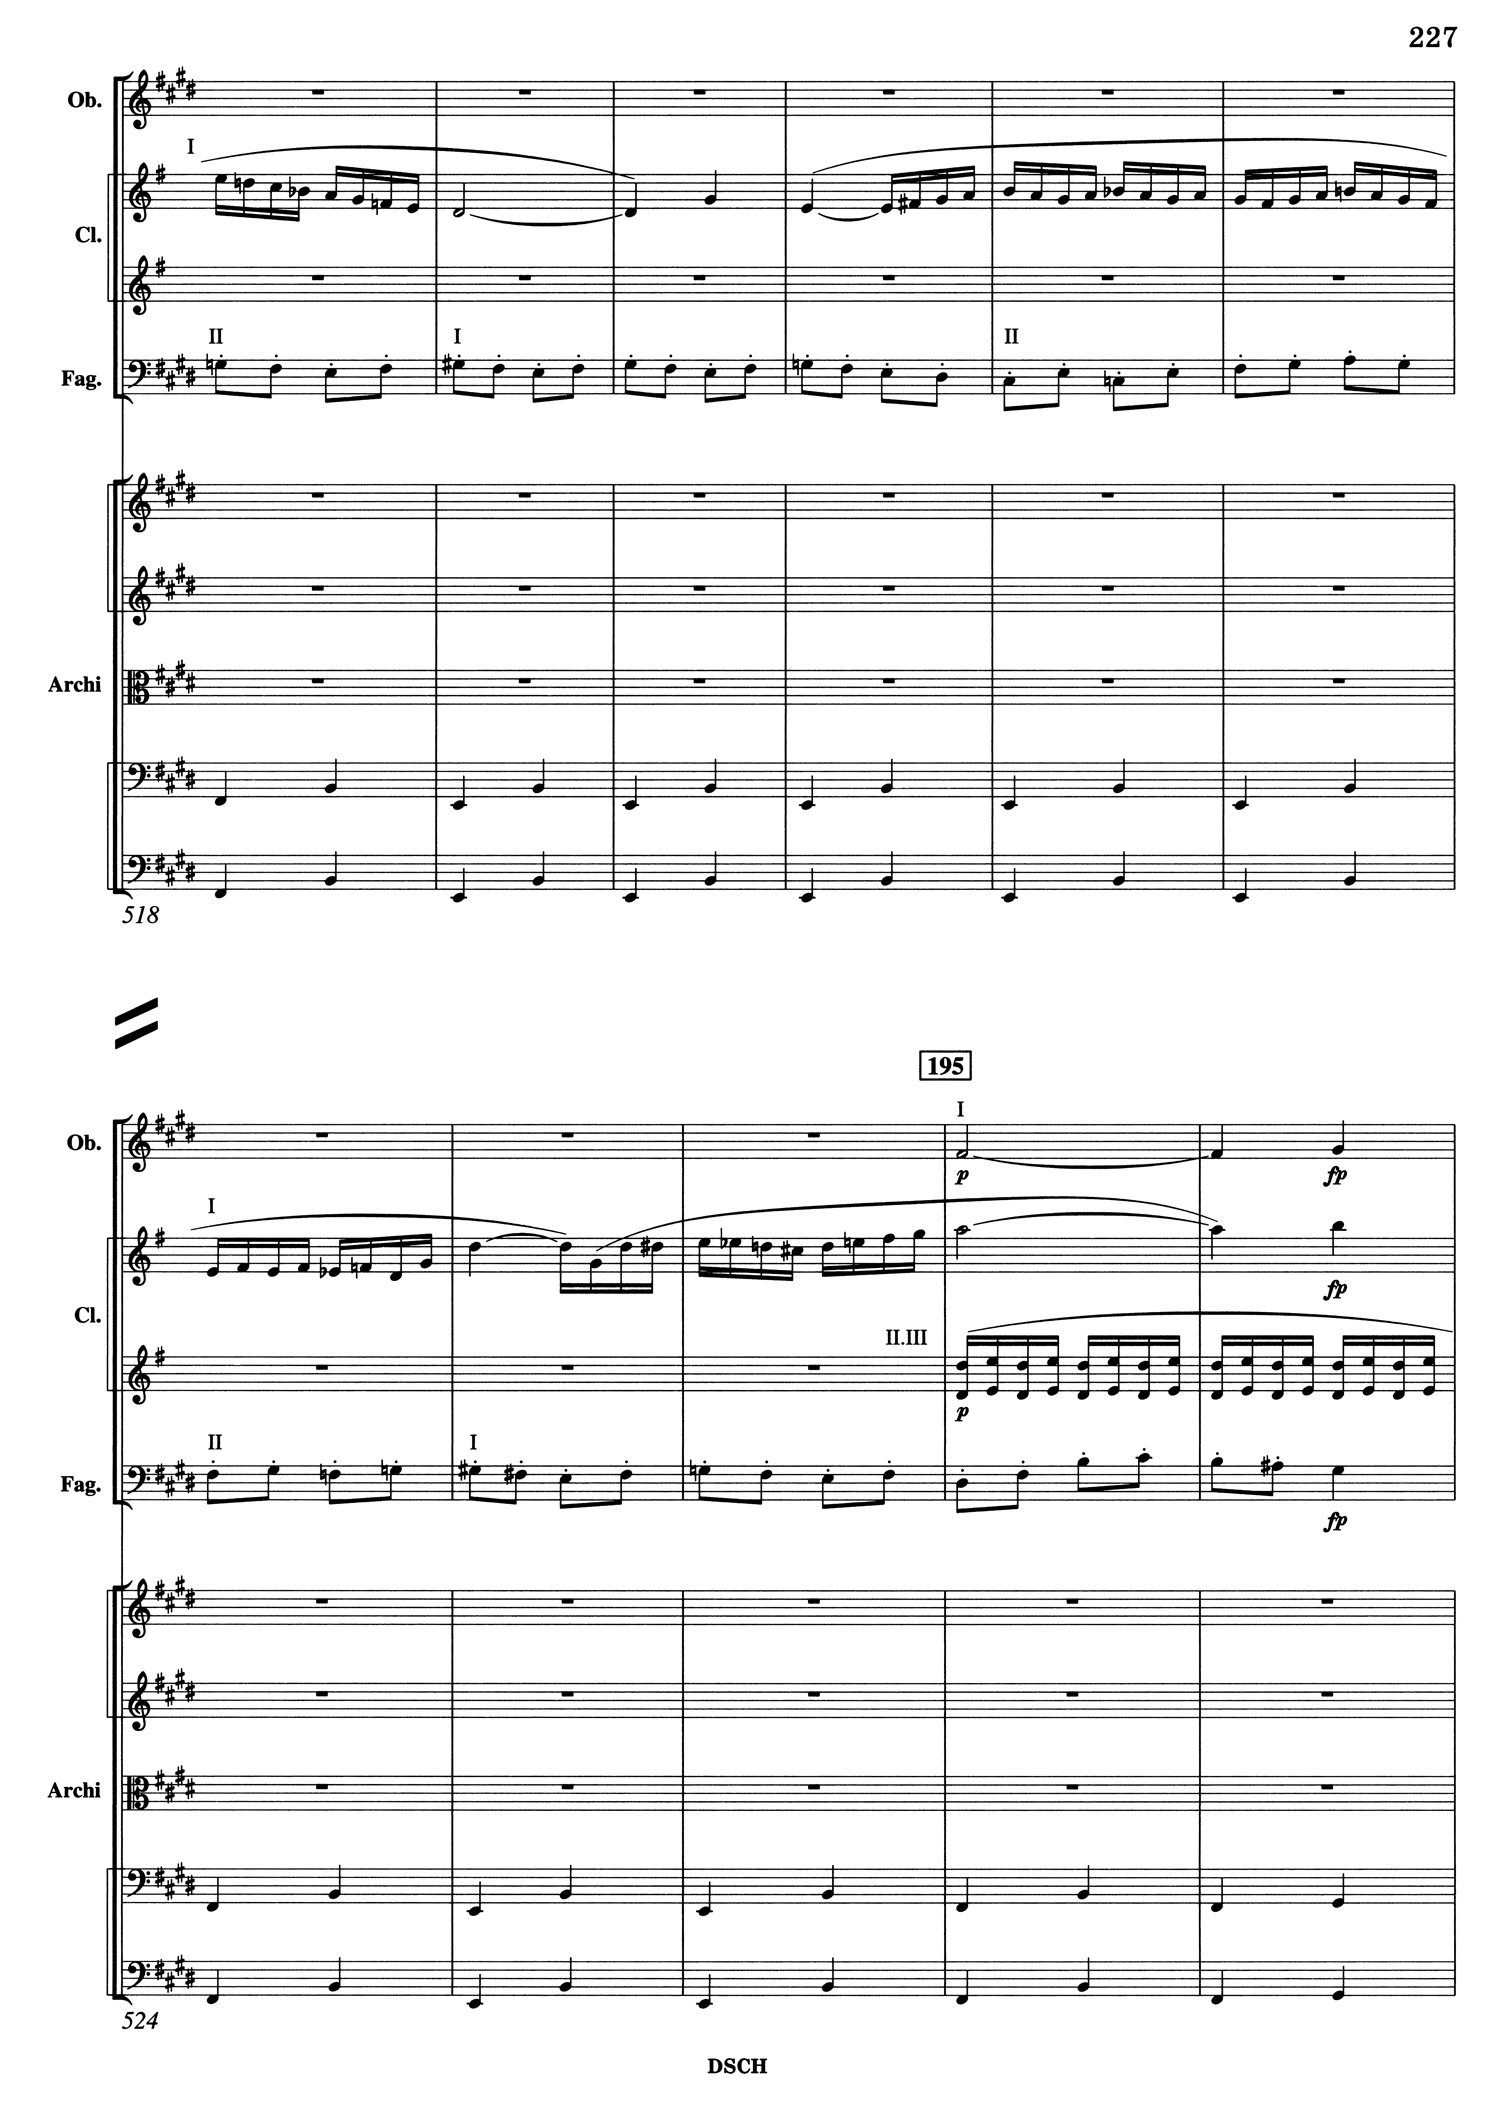 Shostakovich 10 Mvt 4 Score Page 6.jpg